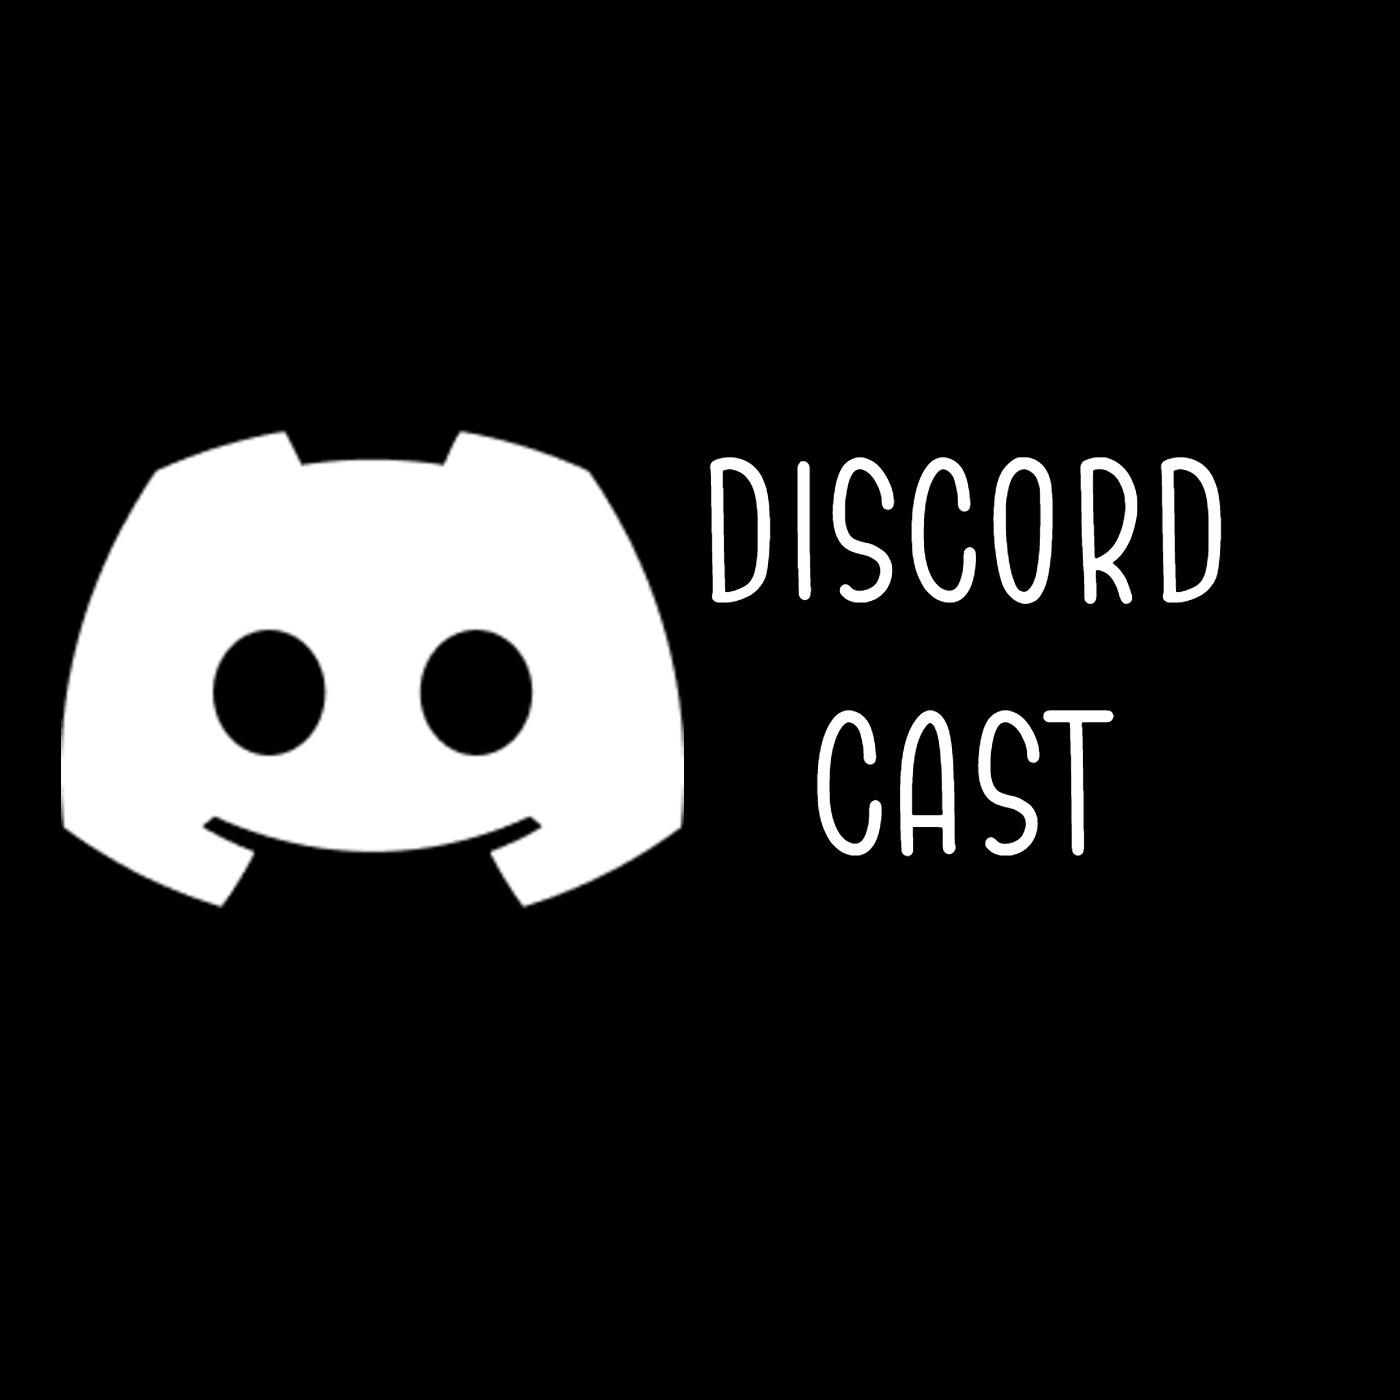 Discord Cast